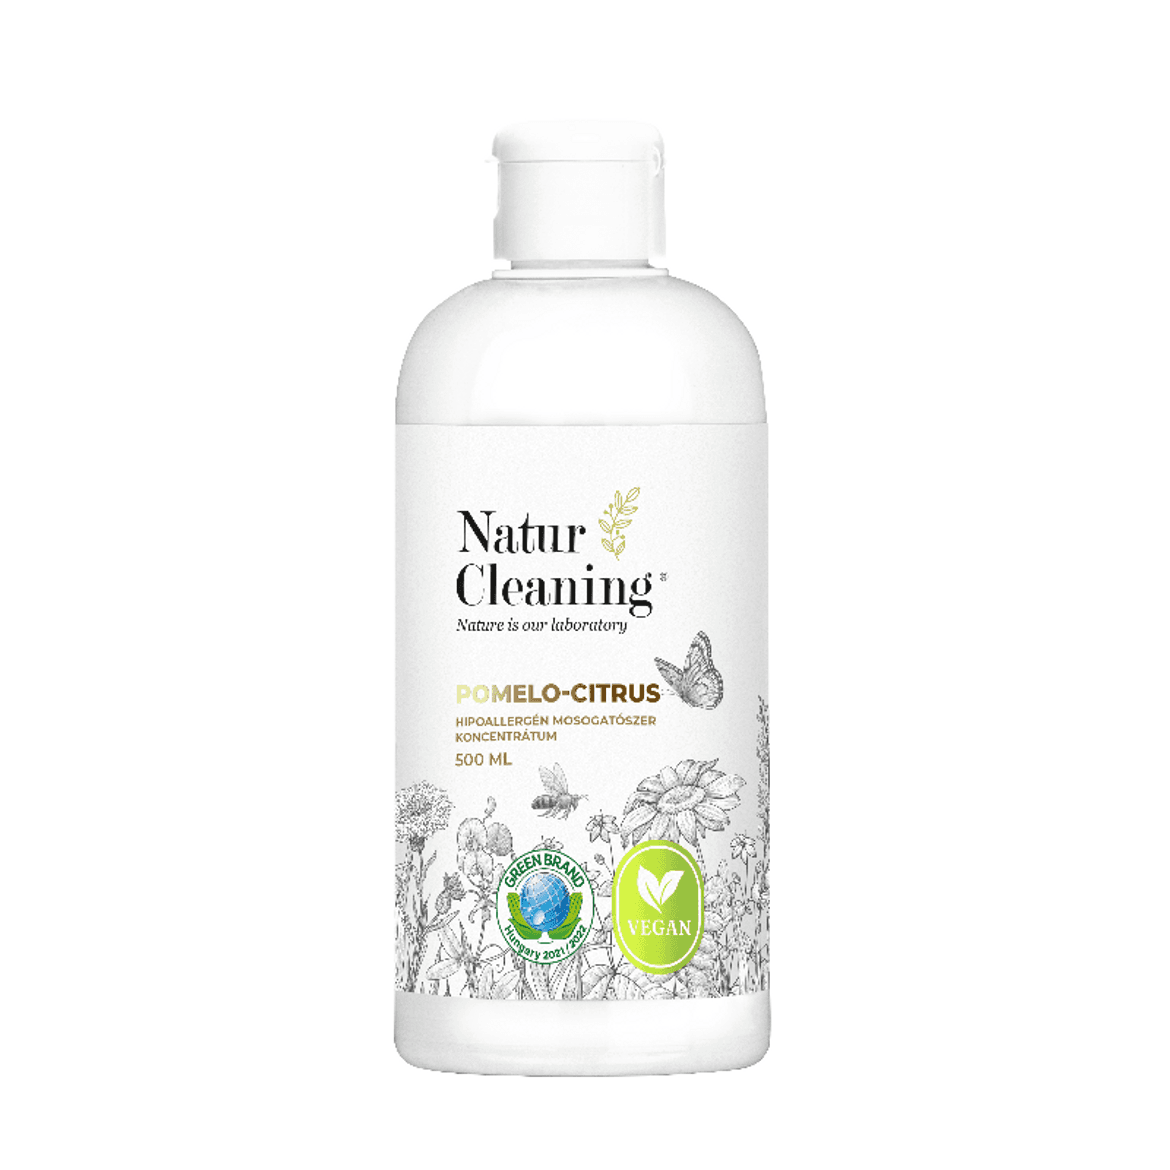 Natur Cleaning mosogatószer koncentrátum Pomelo citrus Hipoallergén